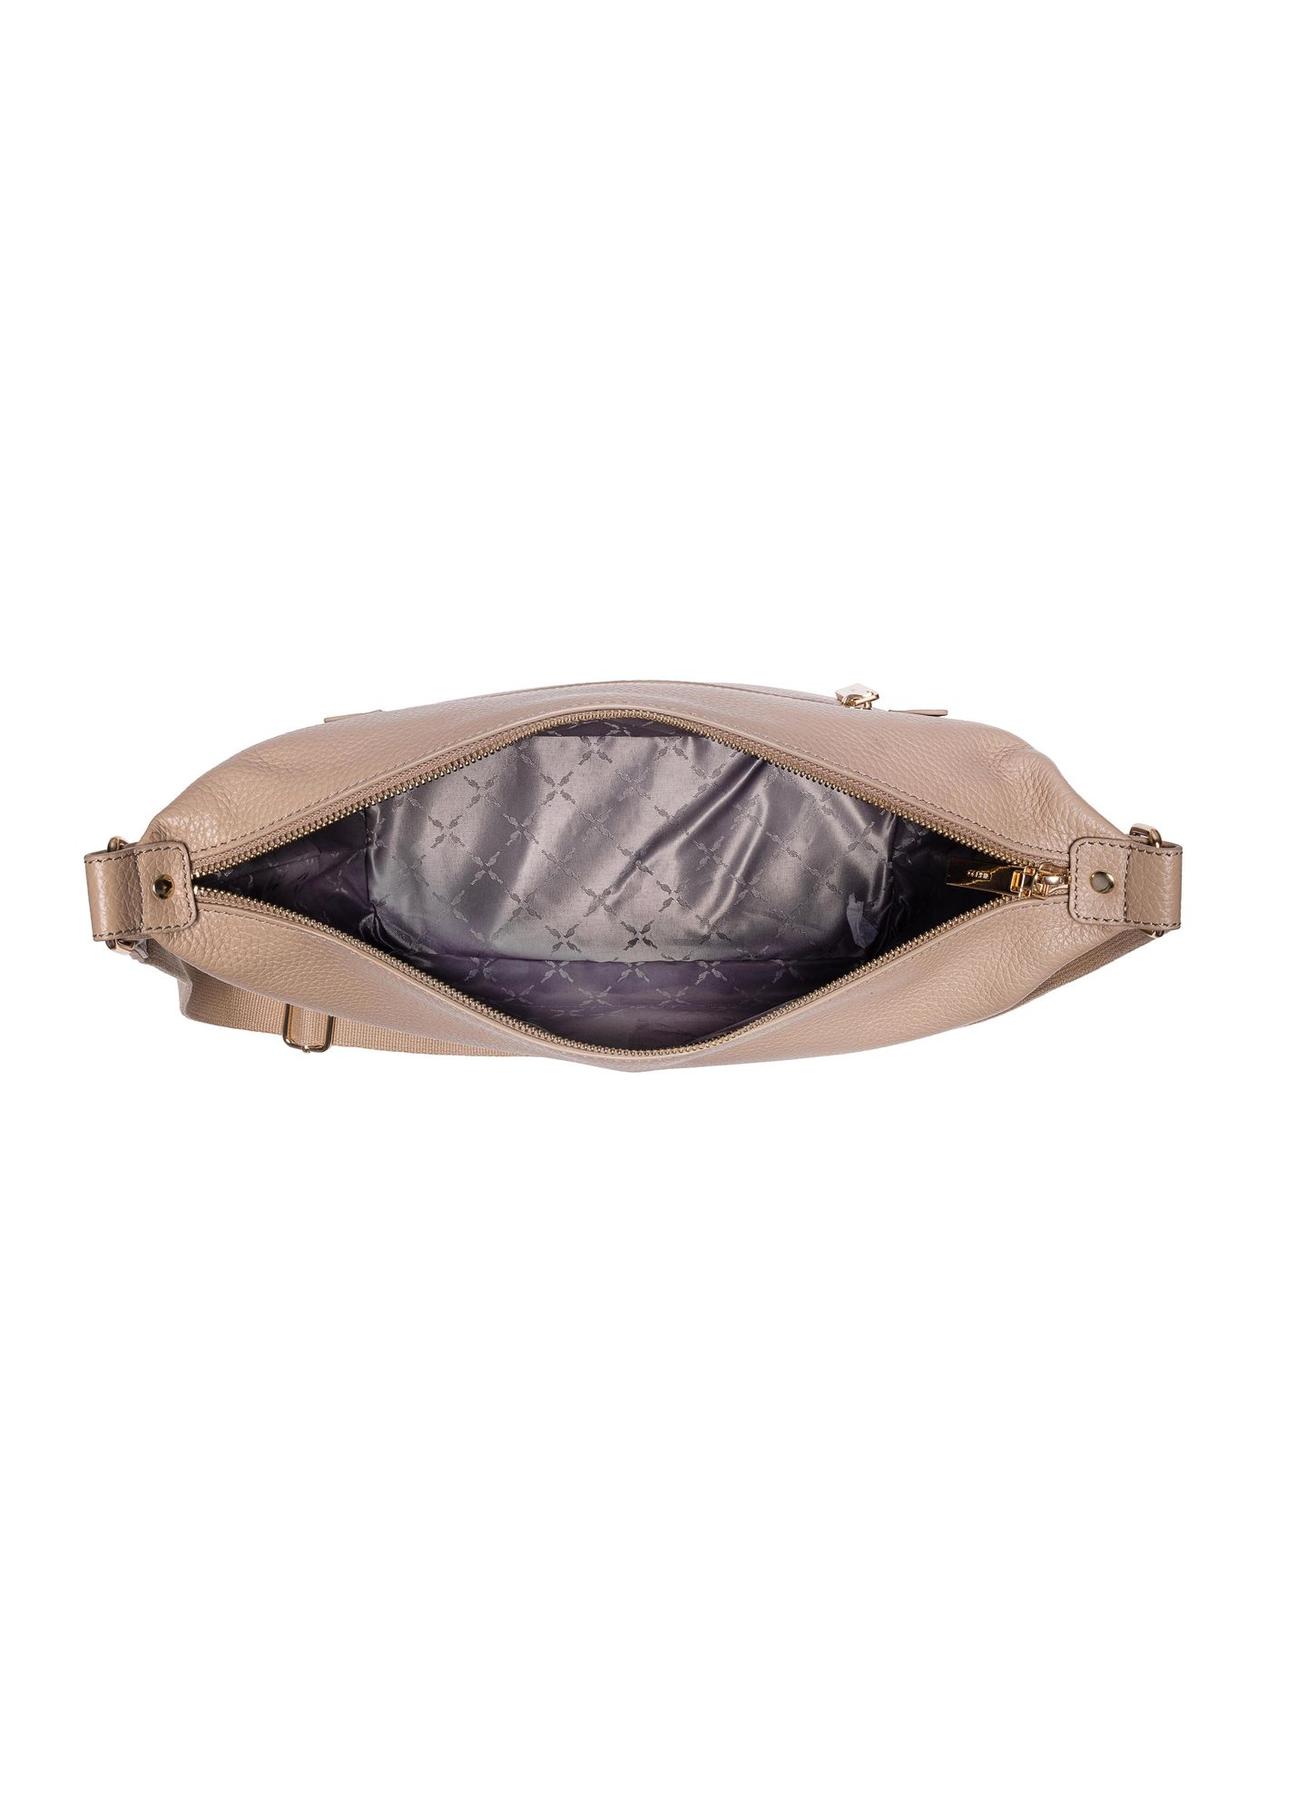 Skórzana torebka damska w kolorze beżowym TORES-0984-81(W24)